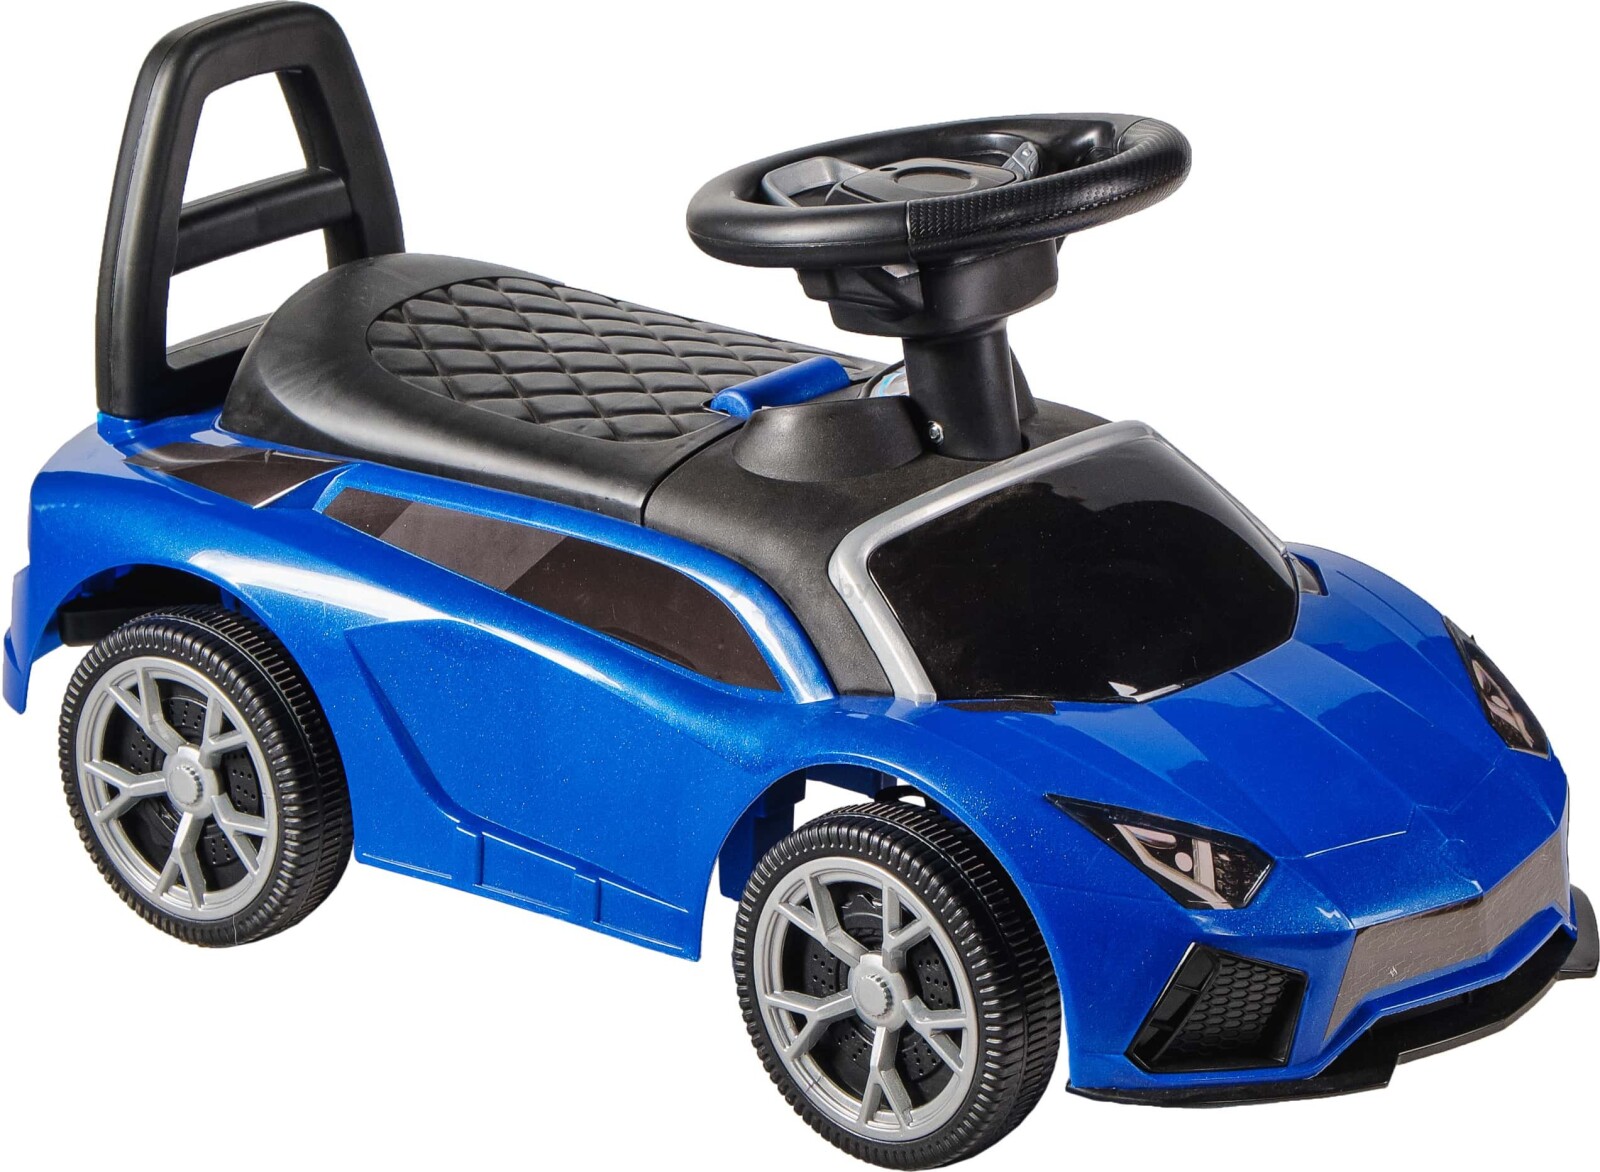 Каталка KIDSCARE Lamborghini 5188 синий